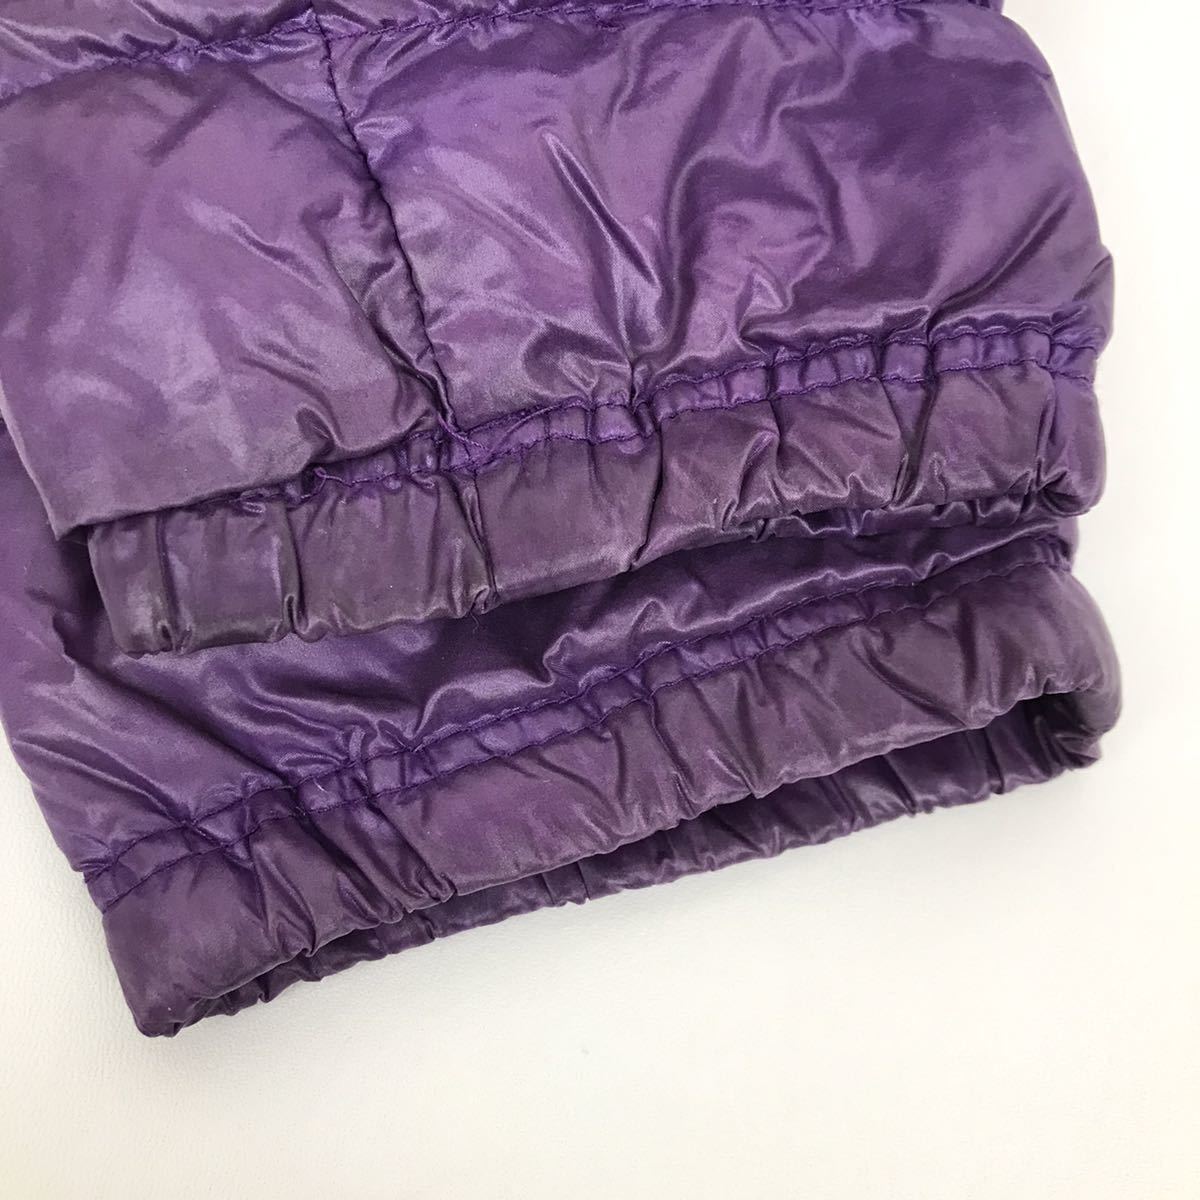 UNIQLO ユニクロ ウルトラライト ダウン パーカー パープル 紫色 S レディース ジャケット アウトドア トラベル ウェア 防寒 ナイロン